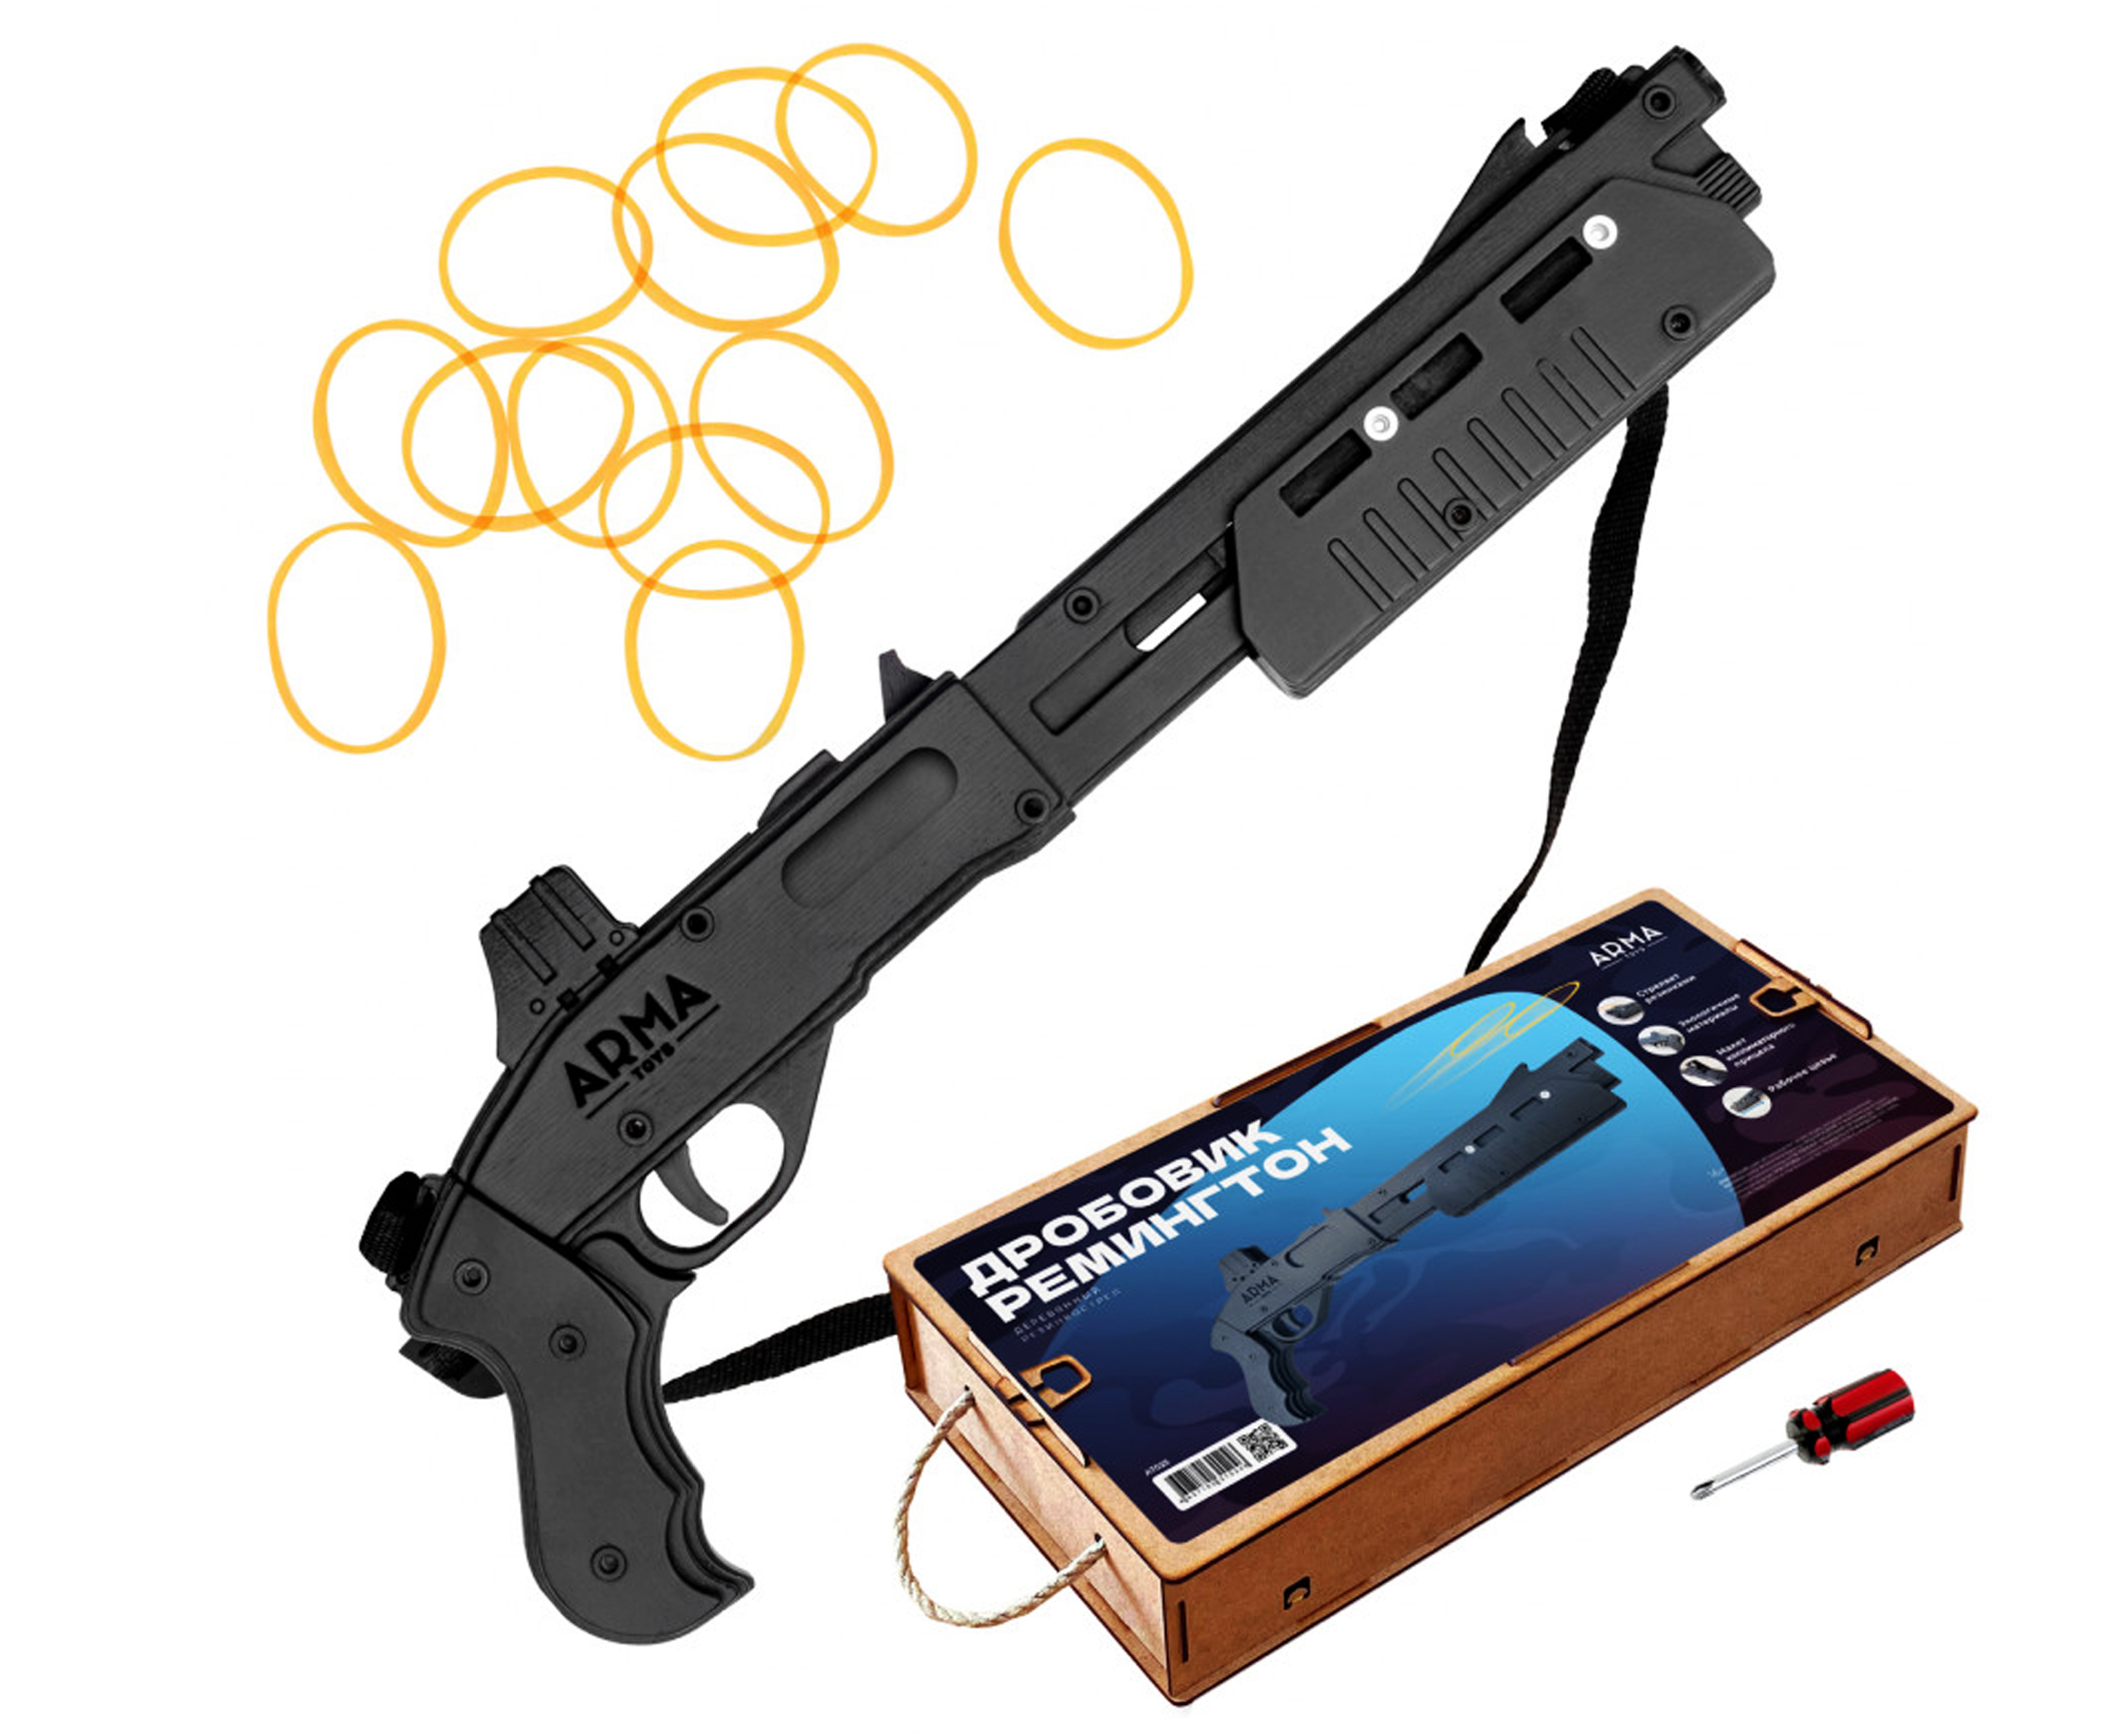 Резинкострел игрушечный Arma toys ружье Remington 870 макет, укороченный, AT025 футболка remington fishing black